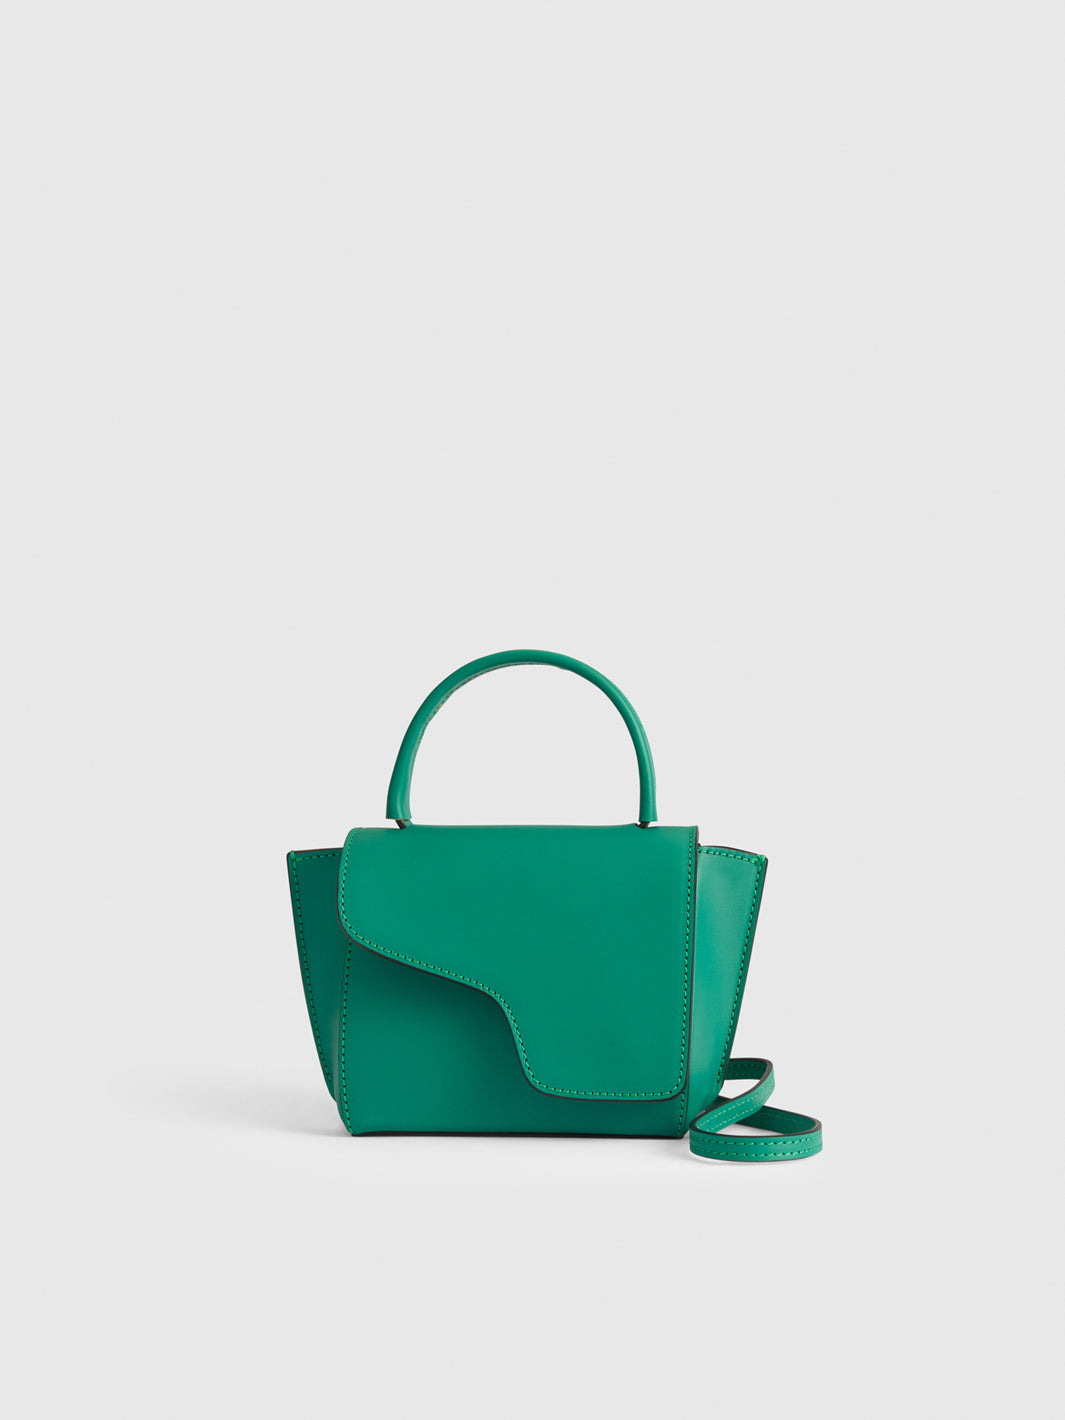 Montalcino Smeraldo Leather Mini handbag